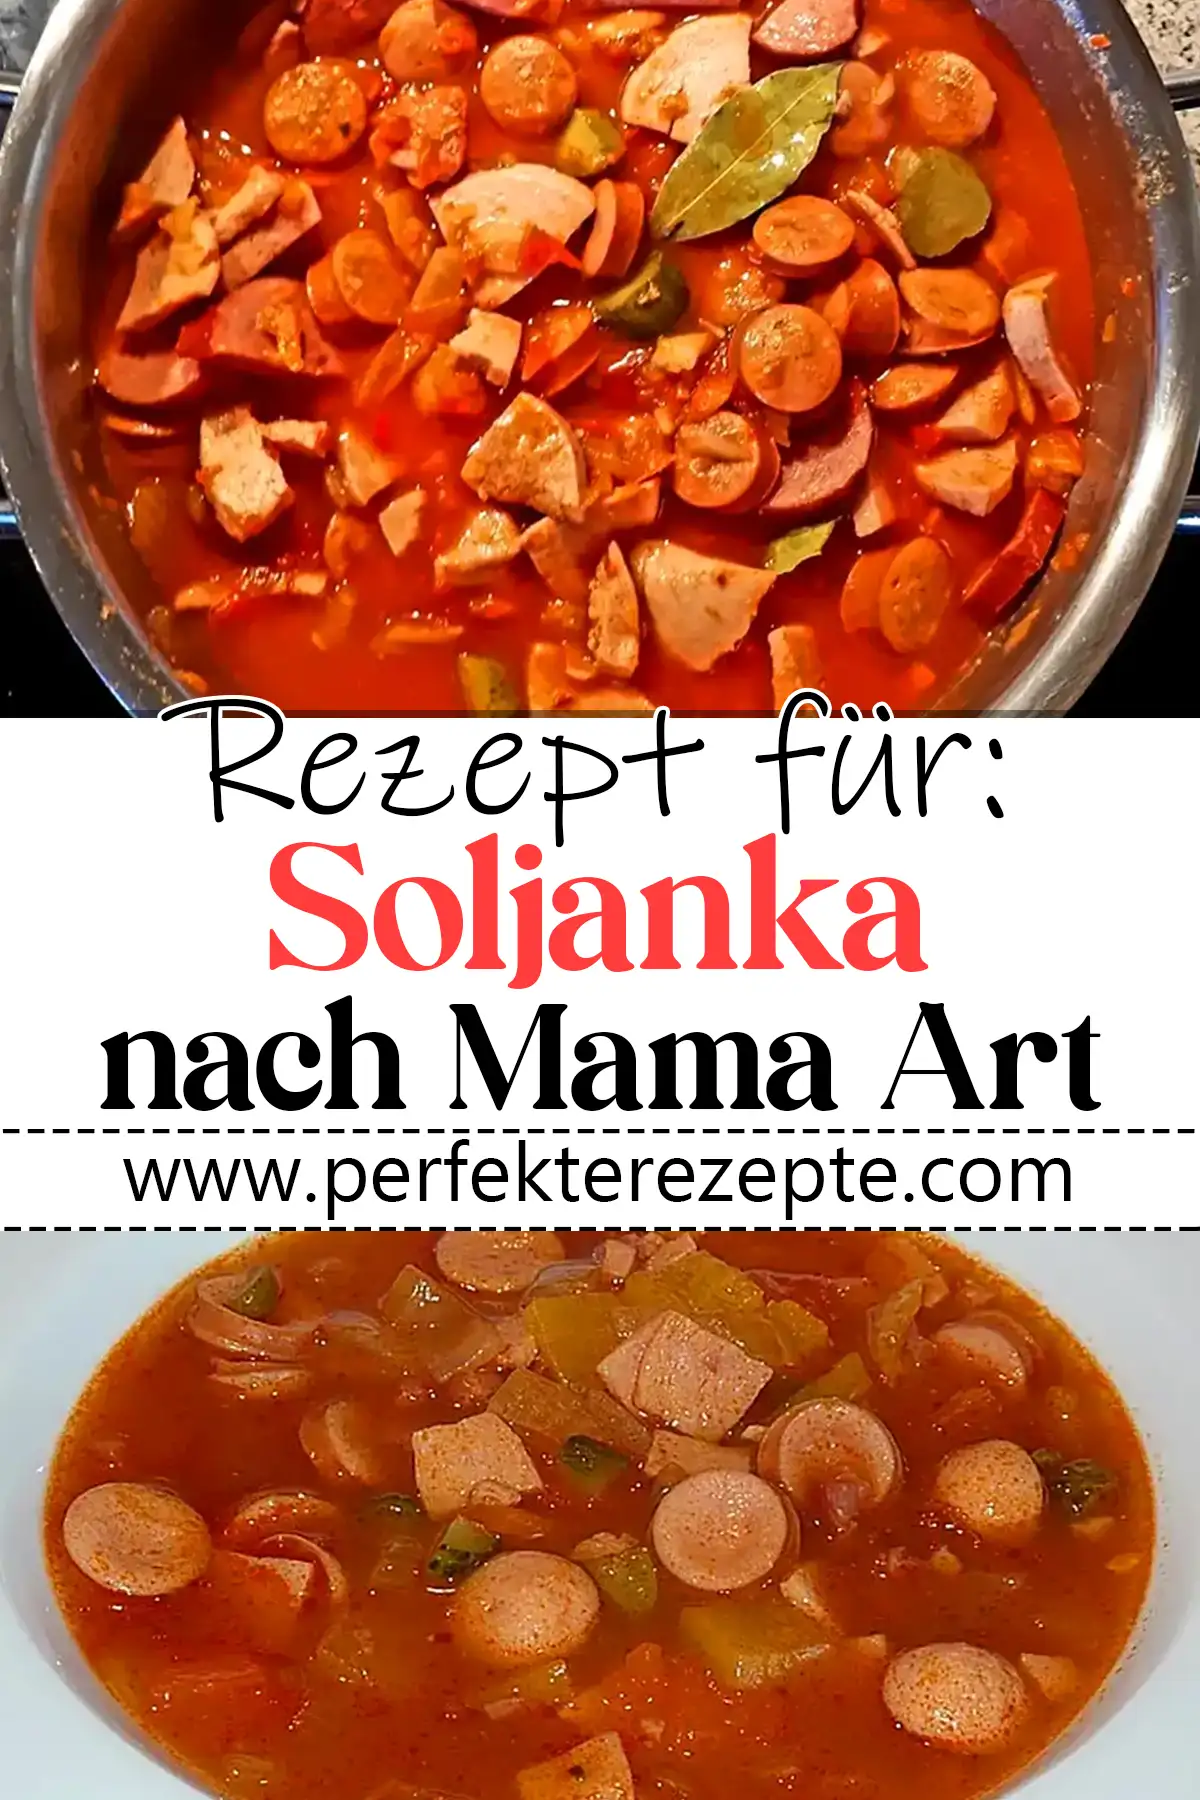 Soljanka Rezept nach Mama Art